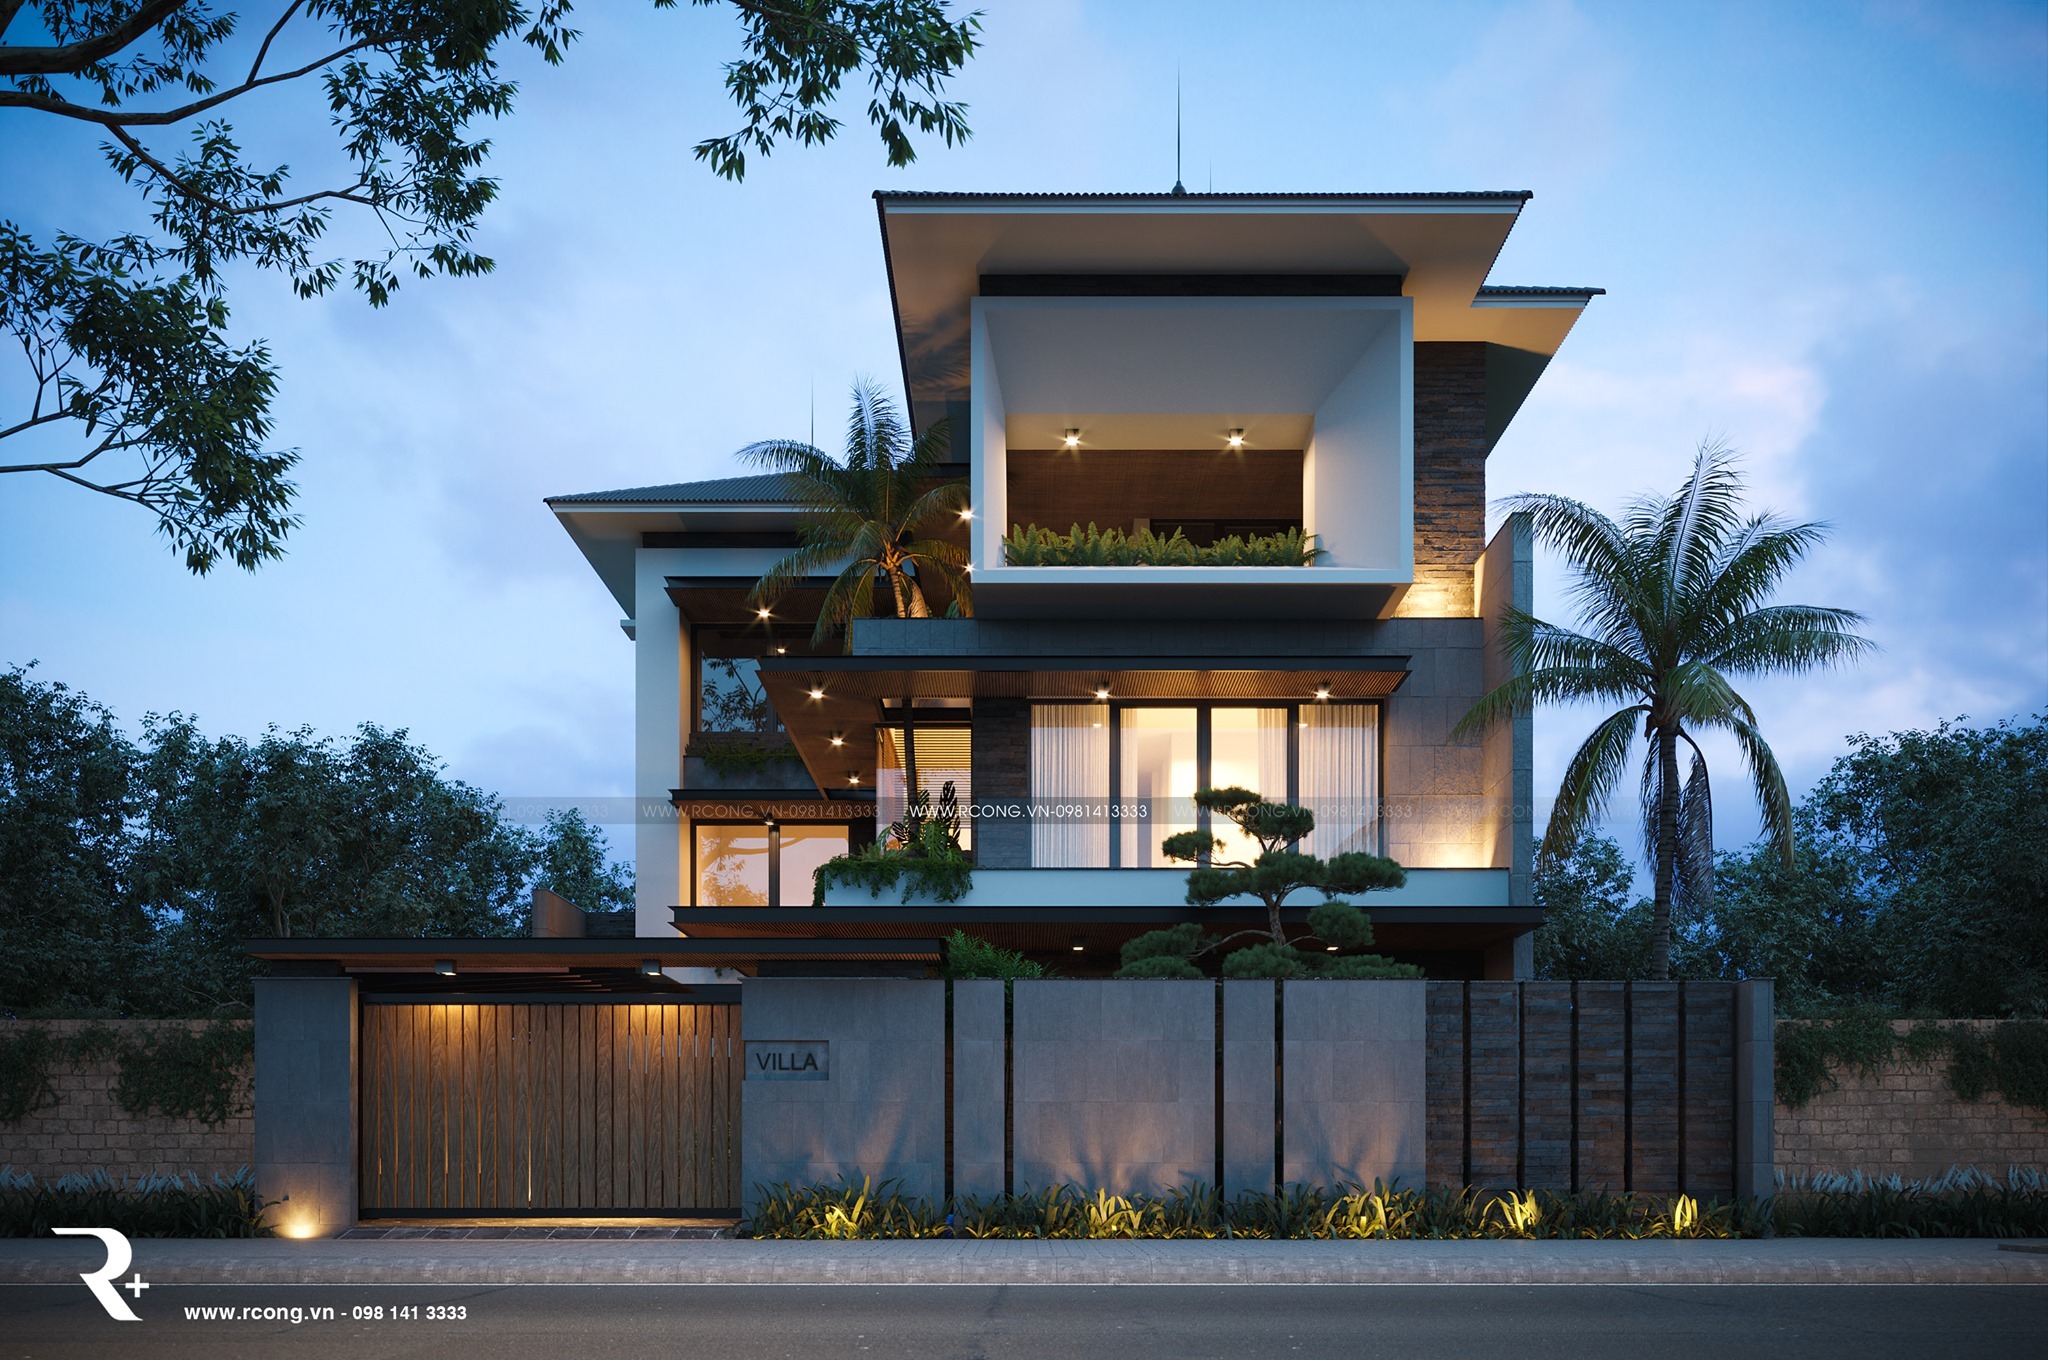 5 mẫu biệt thự hiện đại kính đẹp mang ánh sáng tràn ngập căn nhà bạn